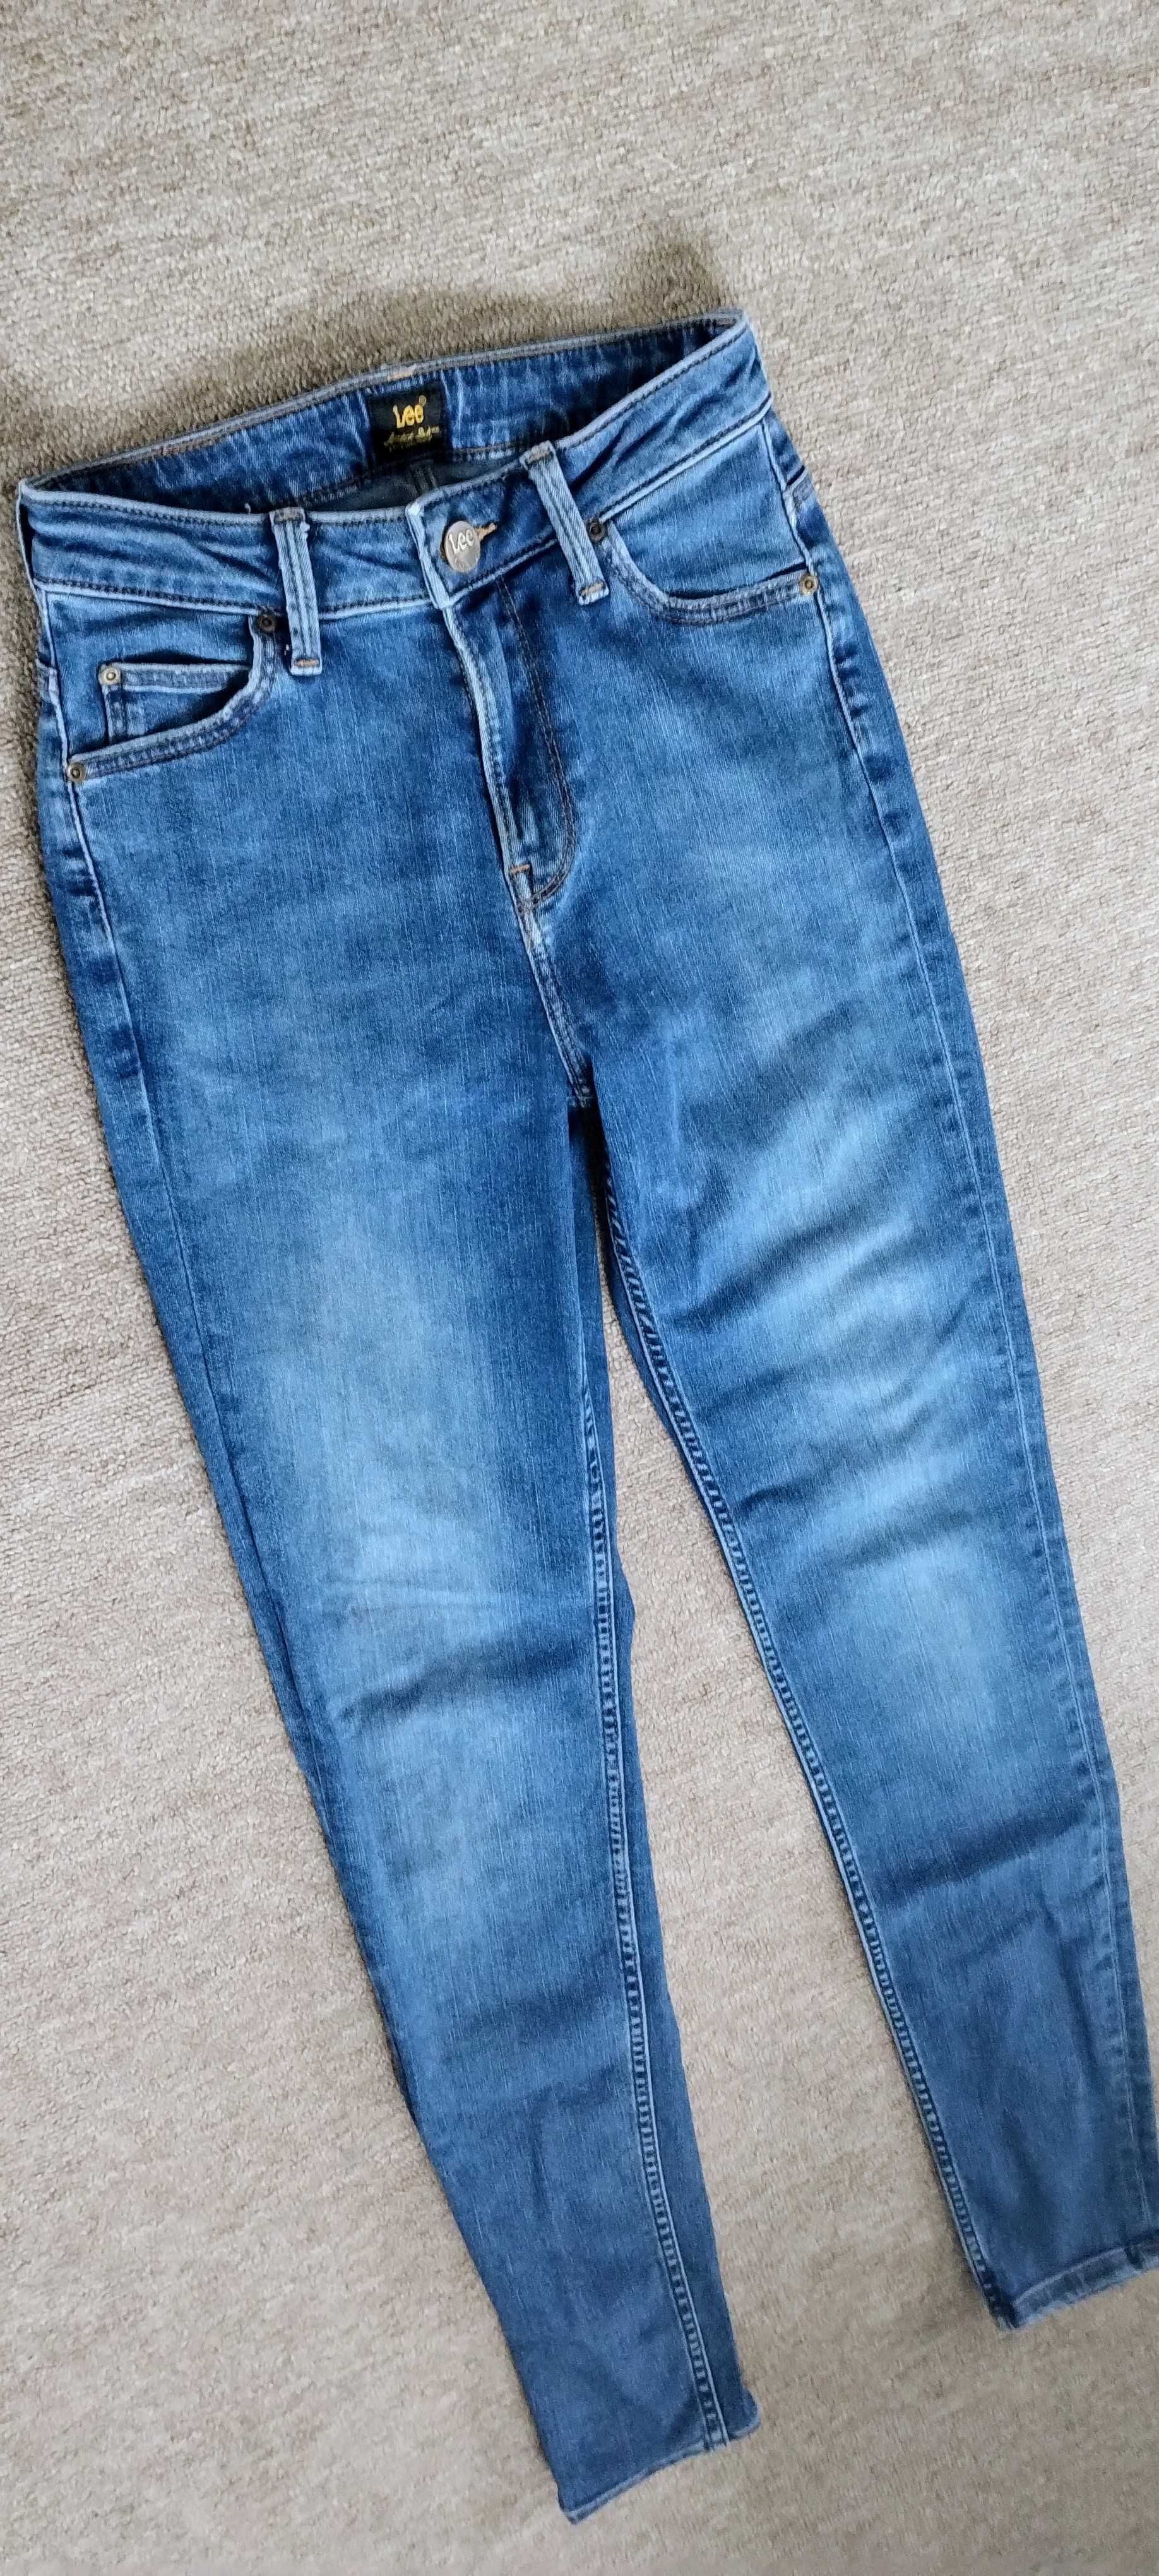 Spodnie jeansowe damskie Lee r 34